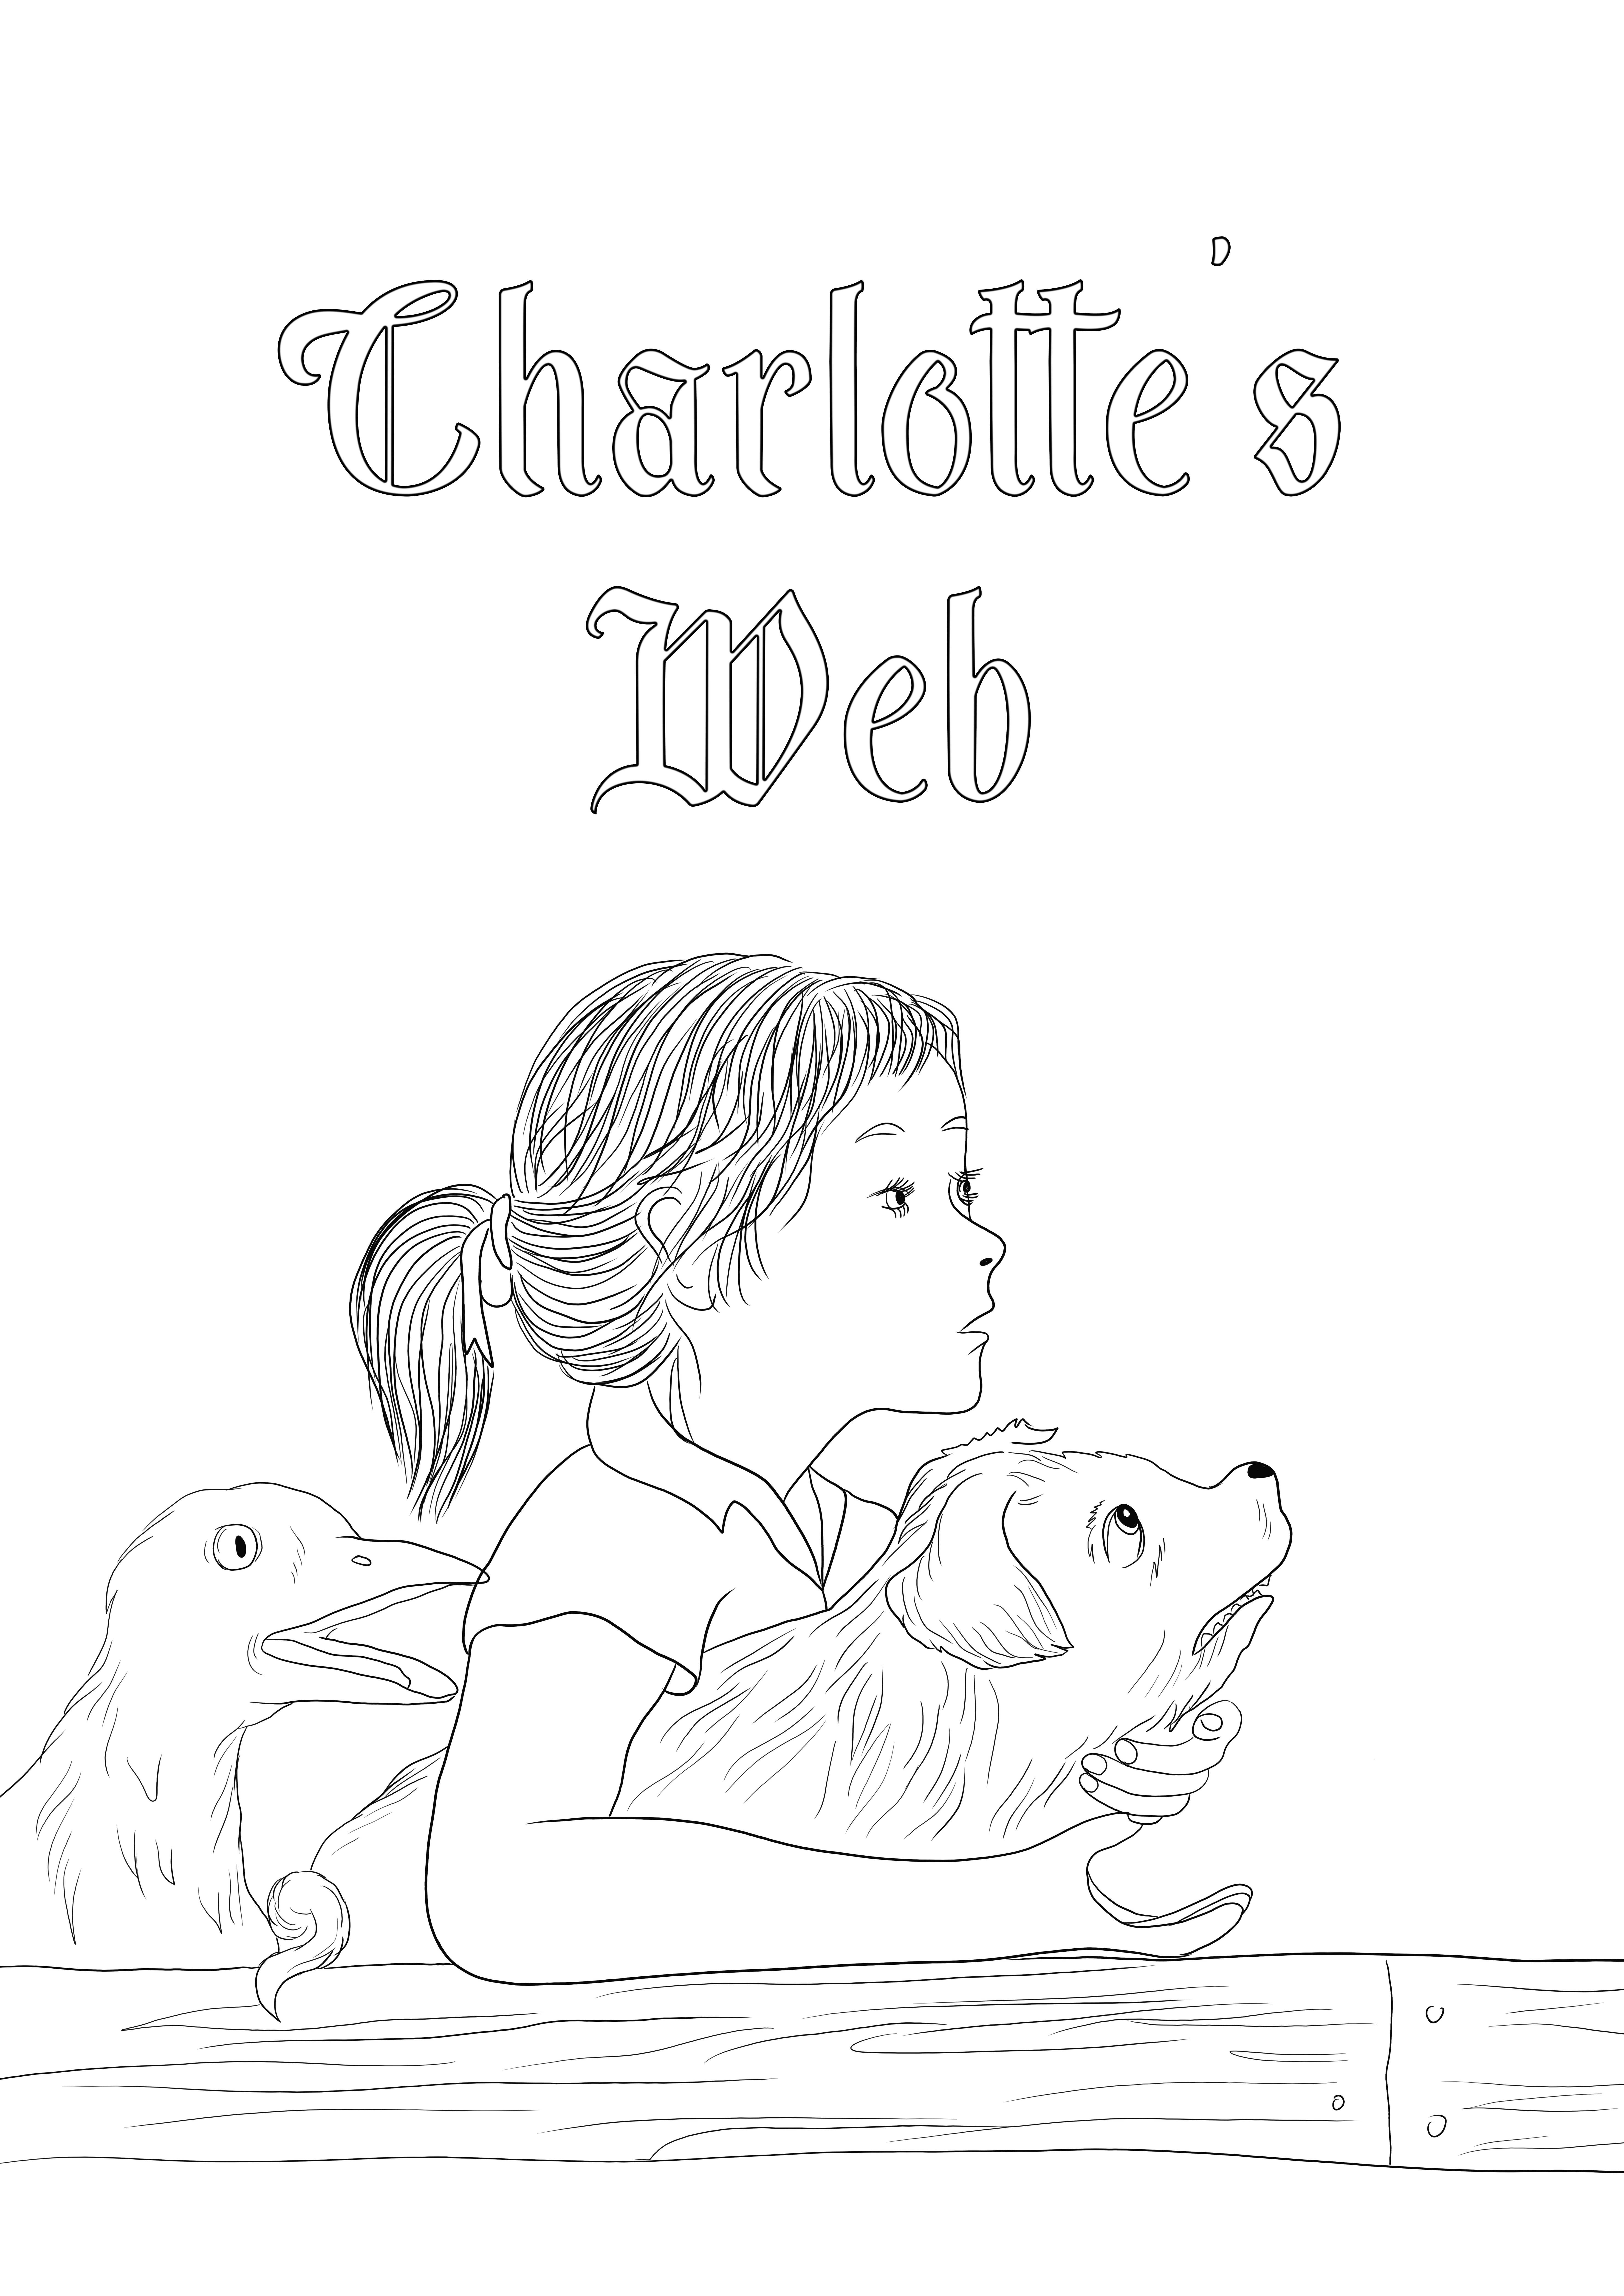 Darmowe postacie Charlotte's Web do wydrukowania do pokolorowania i udostępnienia innym.